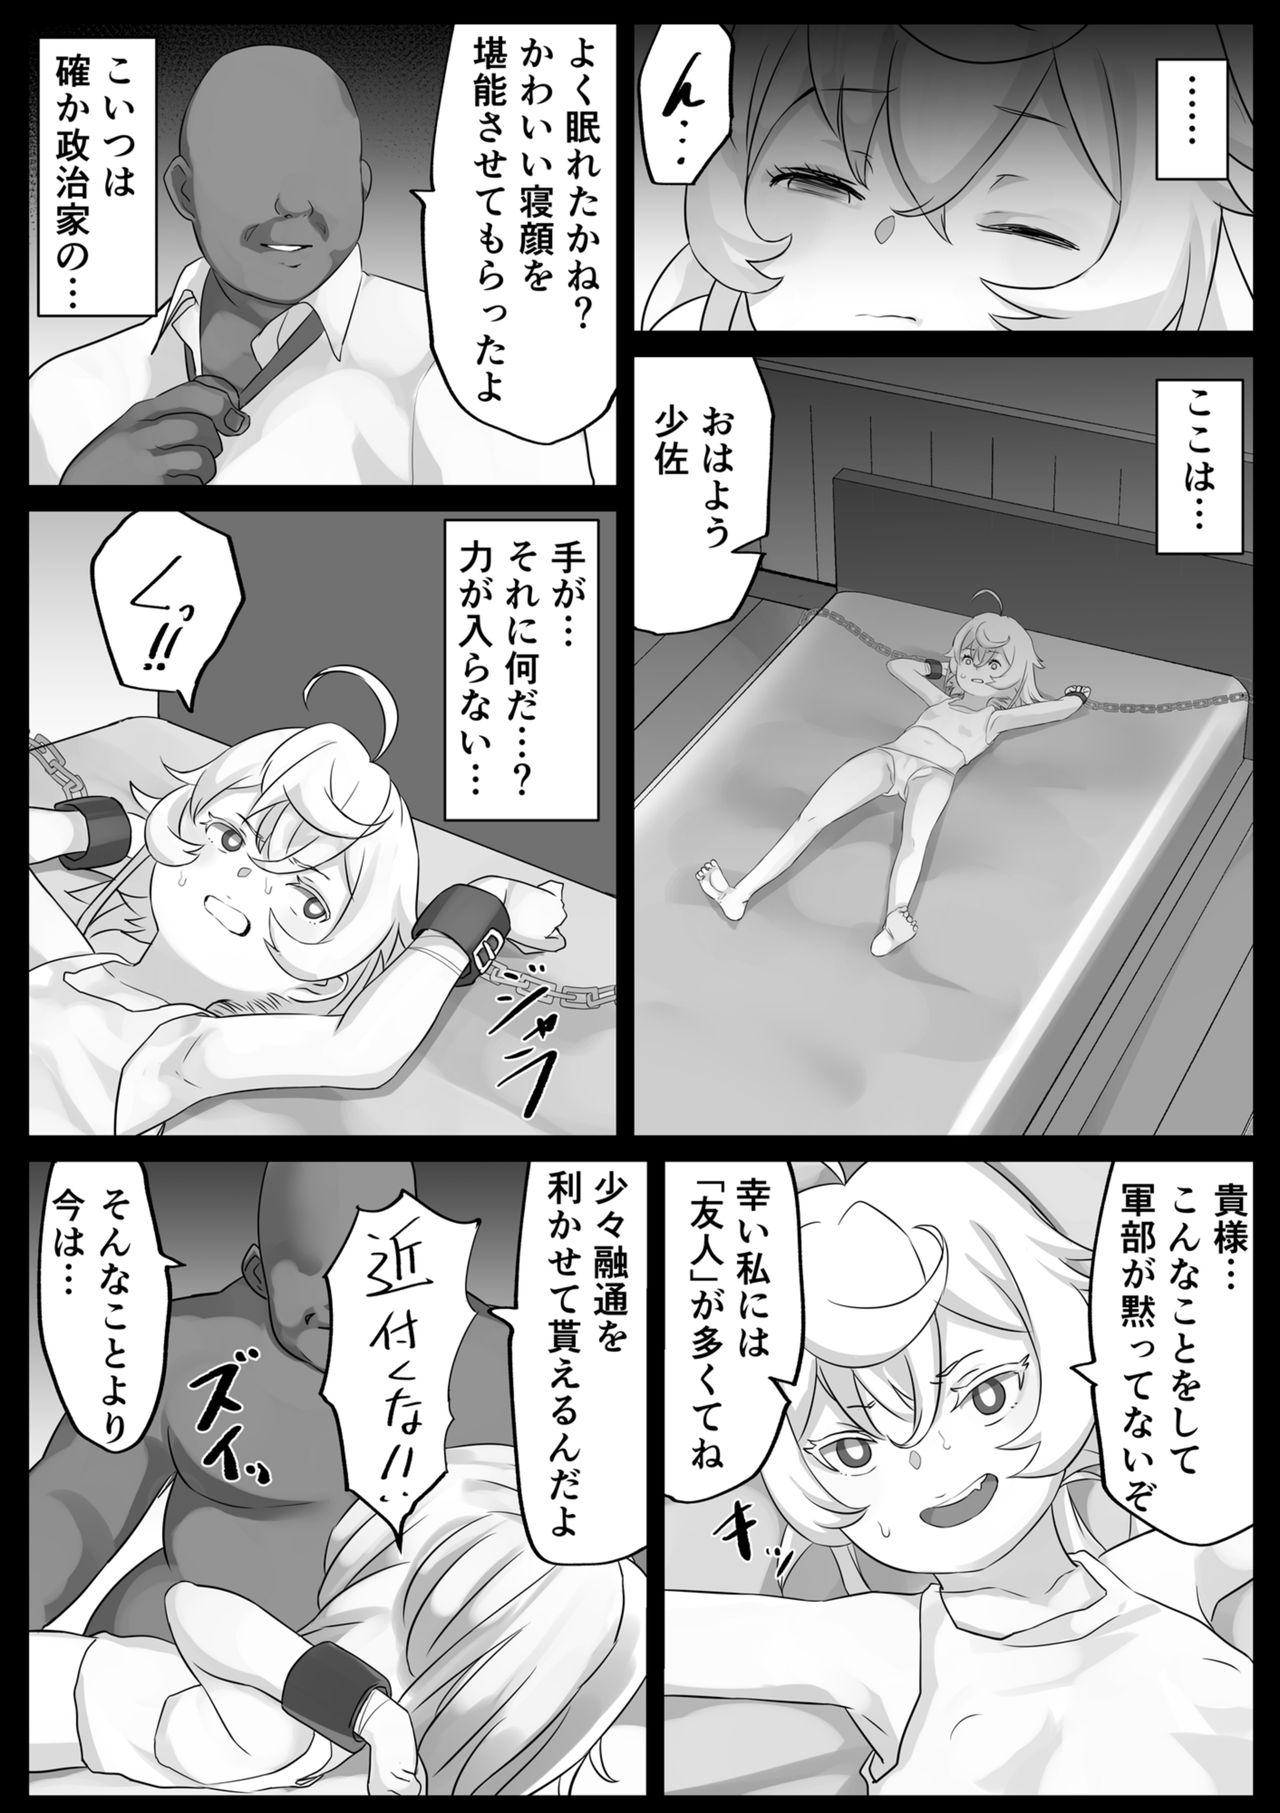 Pussylick Ojisan vs Ojisan - Youjo senki Cougar - Page 2